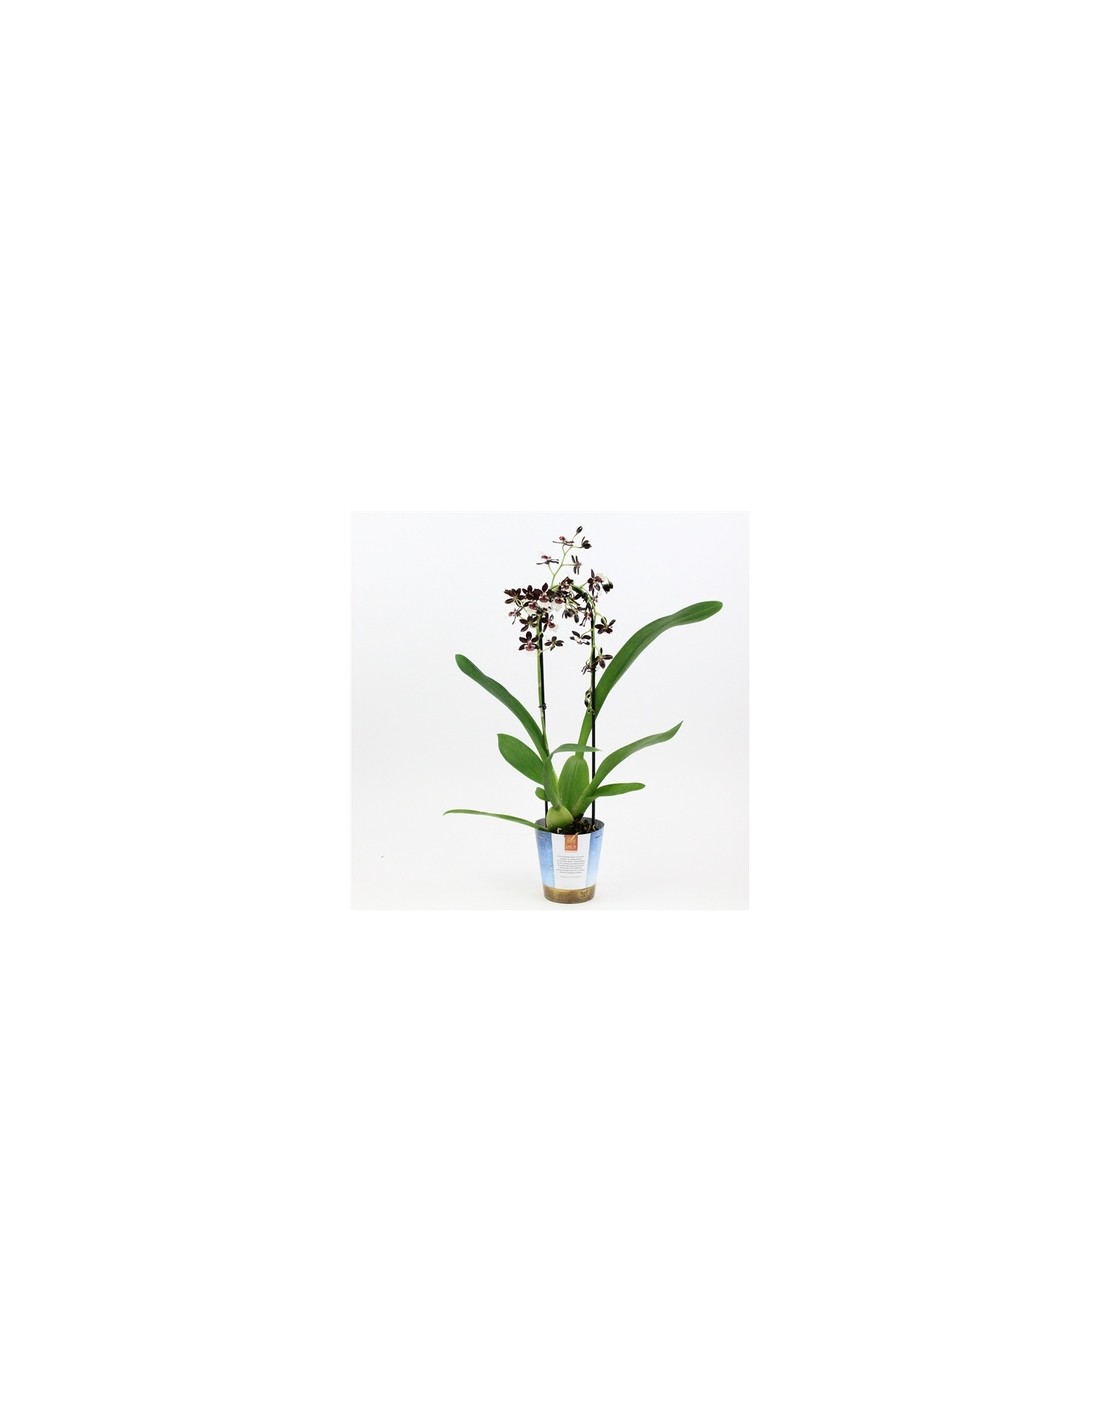 10 Vasi per Orchidee Diametro 12cm - Consegna in 48H